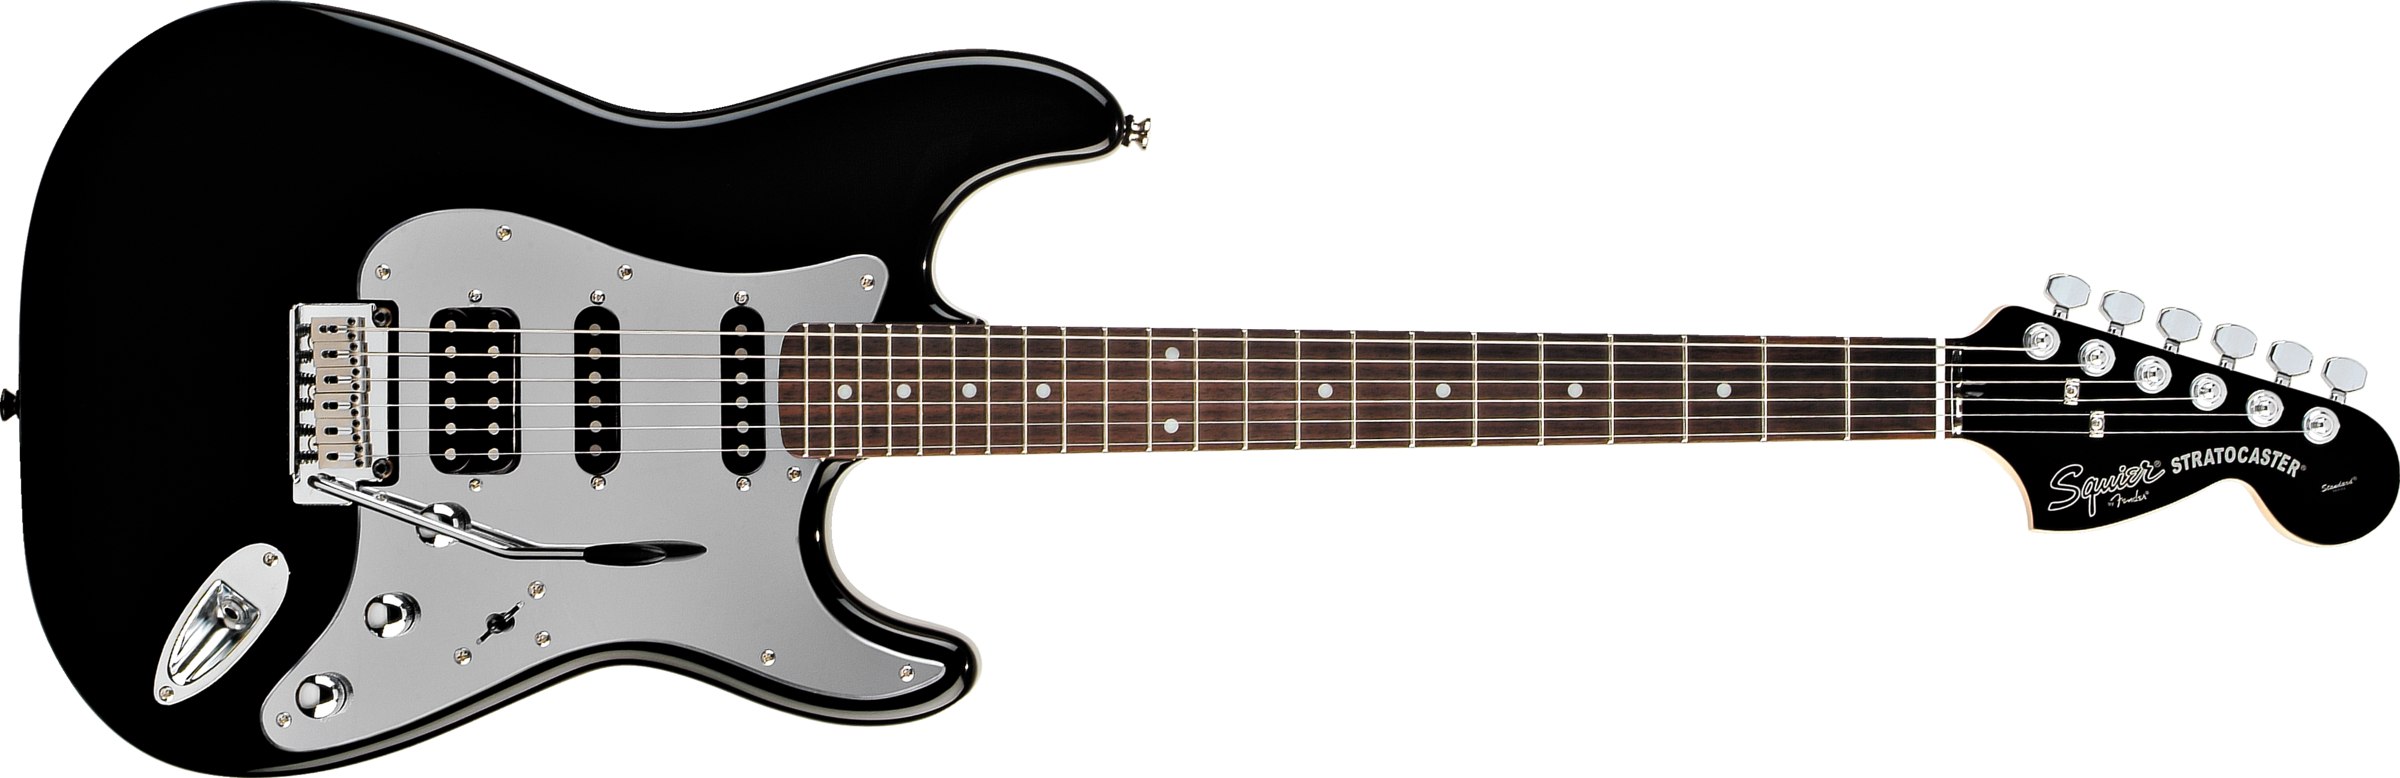 E-Guitar PNG تحميل الصورة